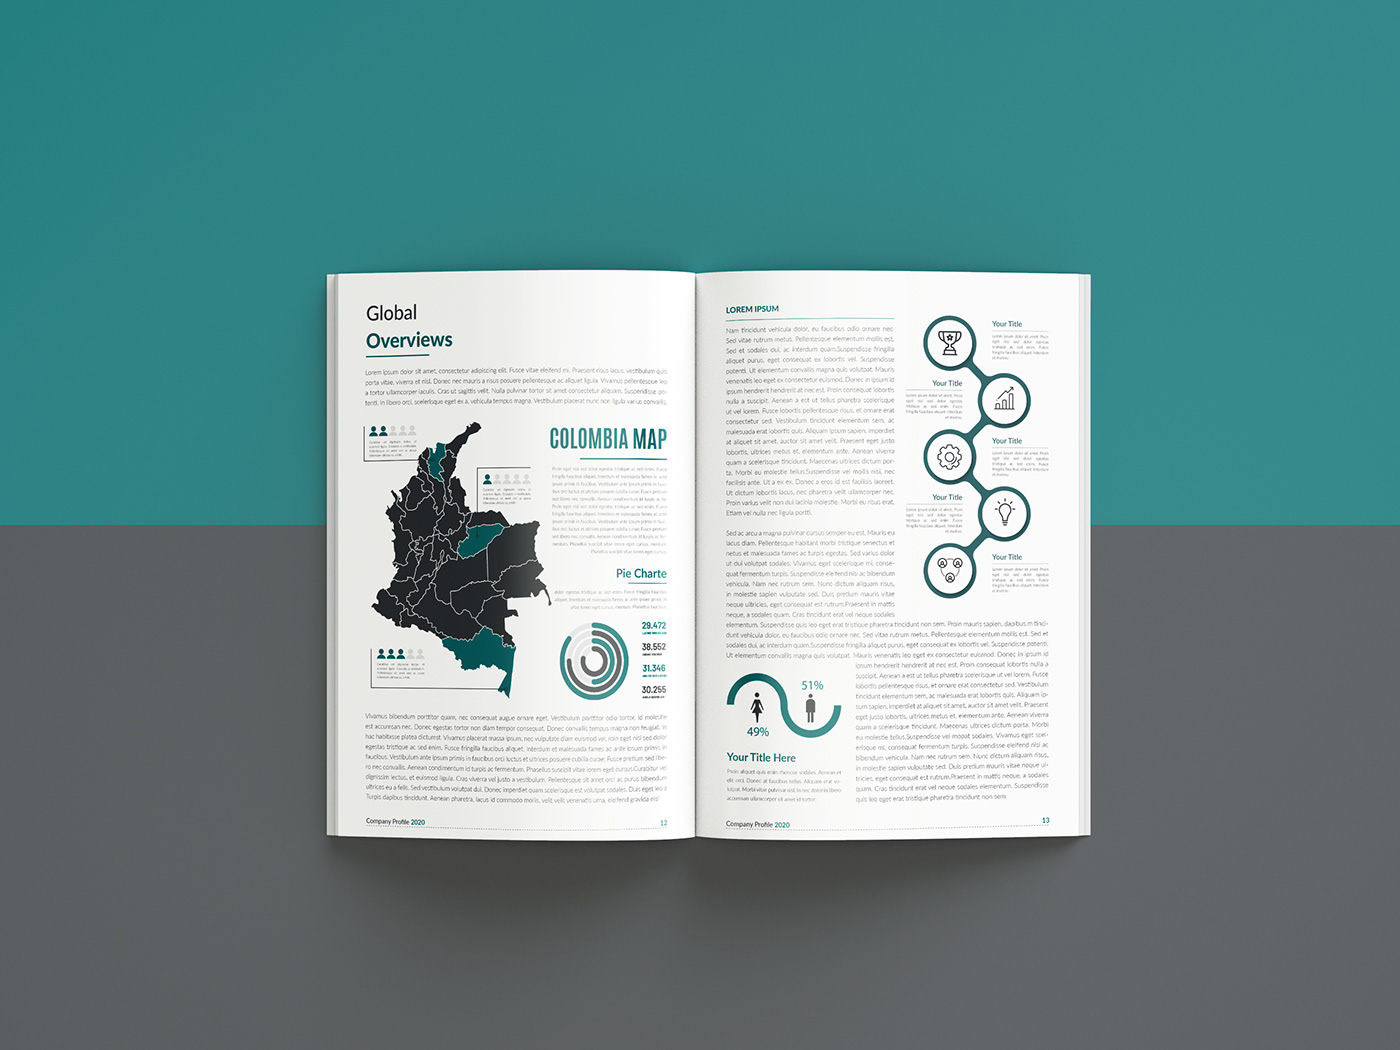 Adobe InDesign Brochure Annual Report Design behance brochure design booklet design Business Magazine Design color idea Company profile design design idea free mockup brochure MULTIPLE BROCHURE DESIGN